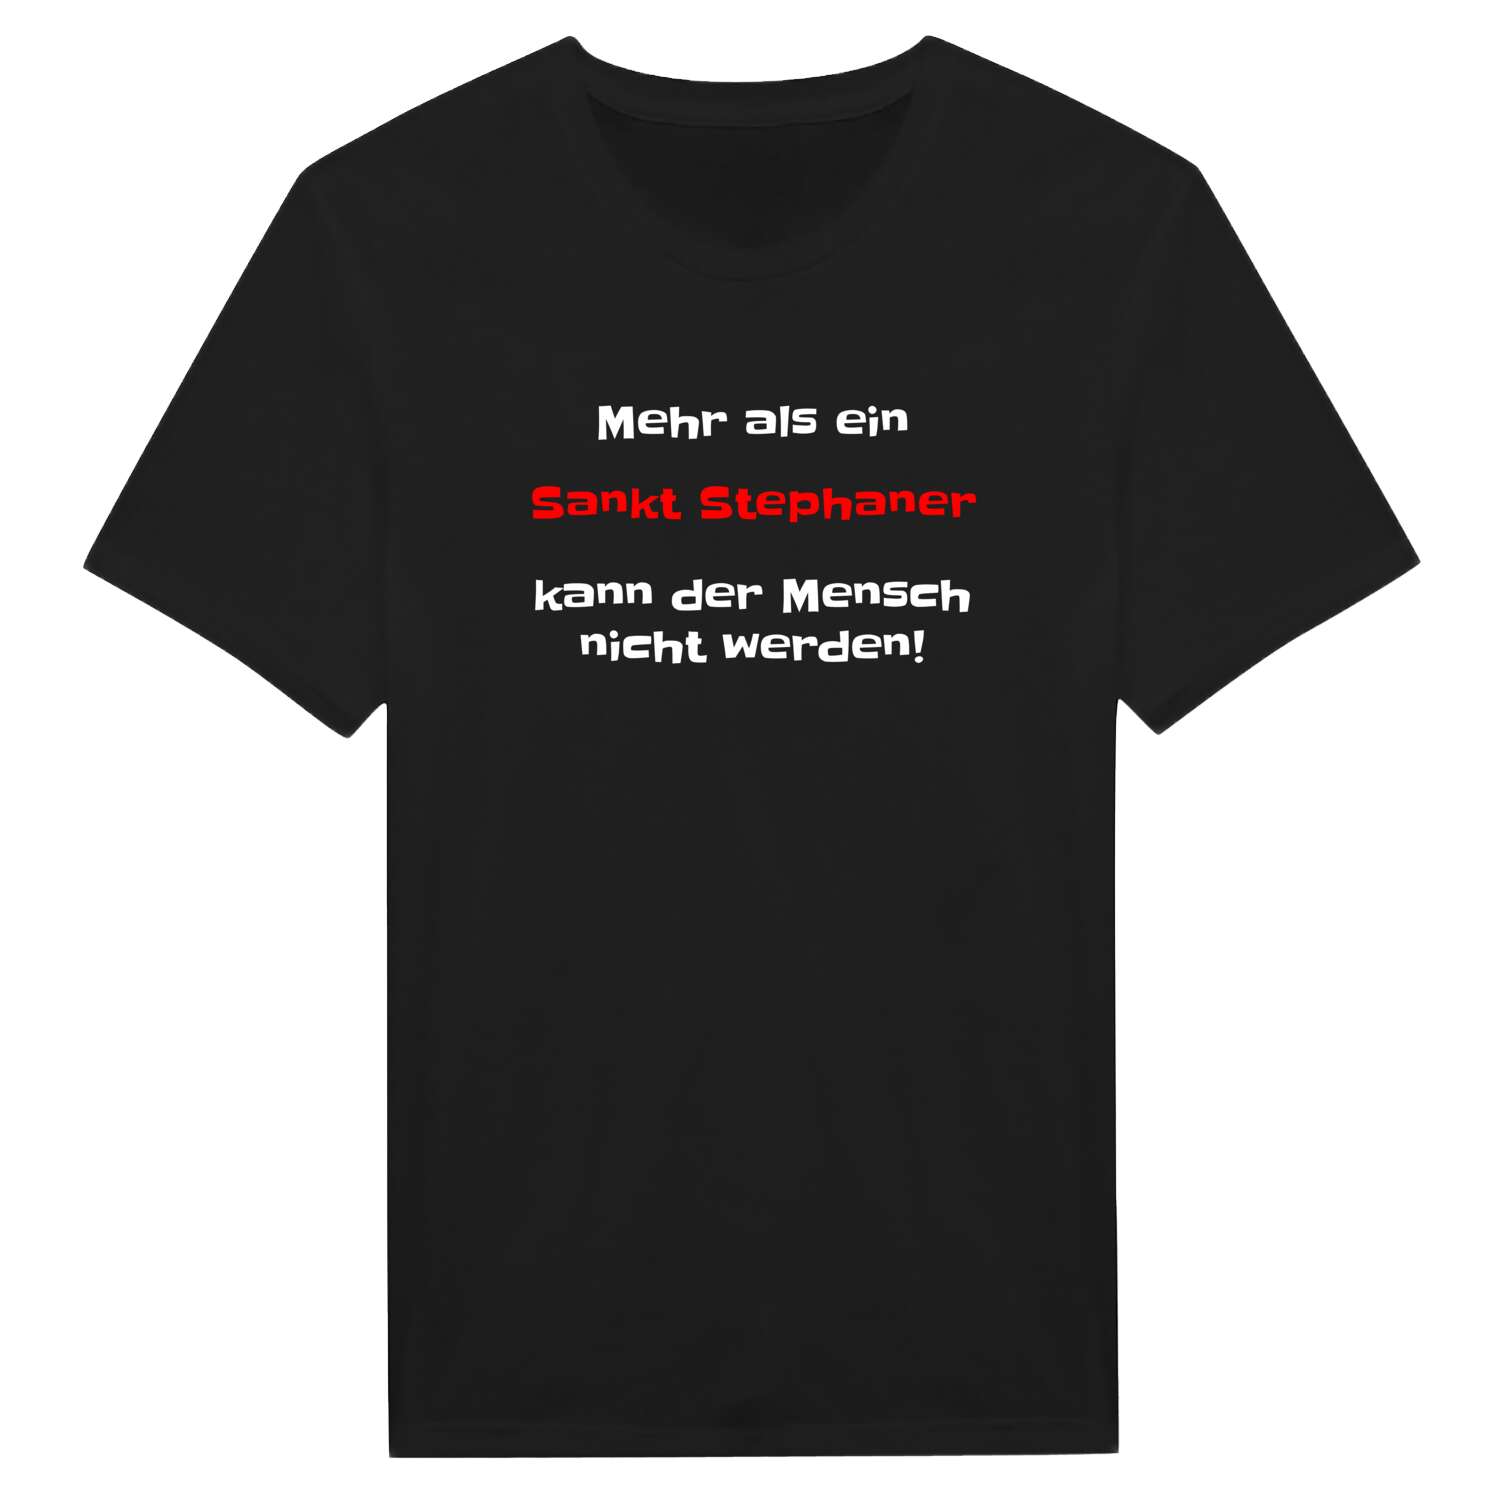 Sankt Stephan T-Shirt »Mehr als ein«